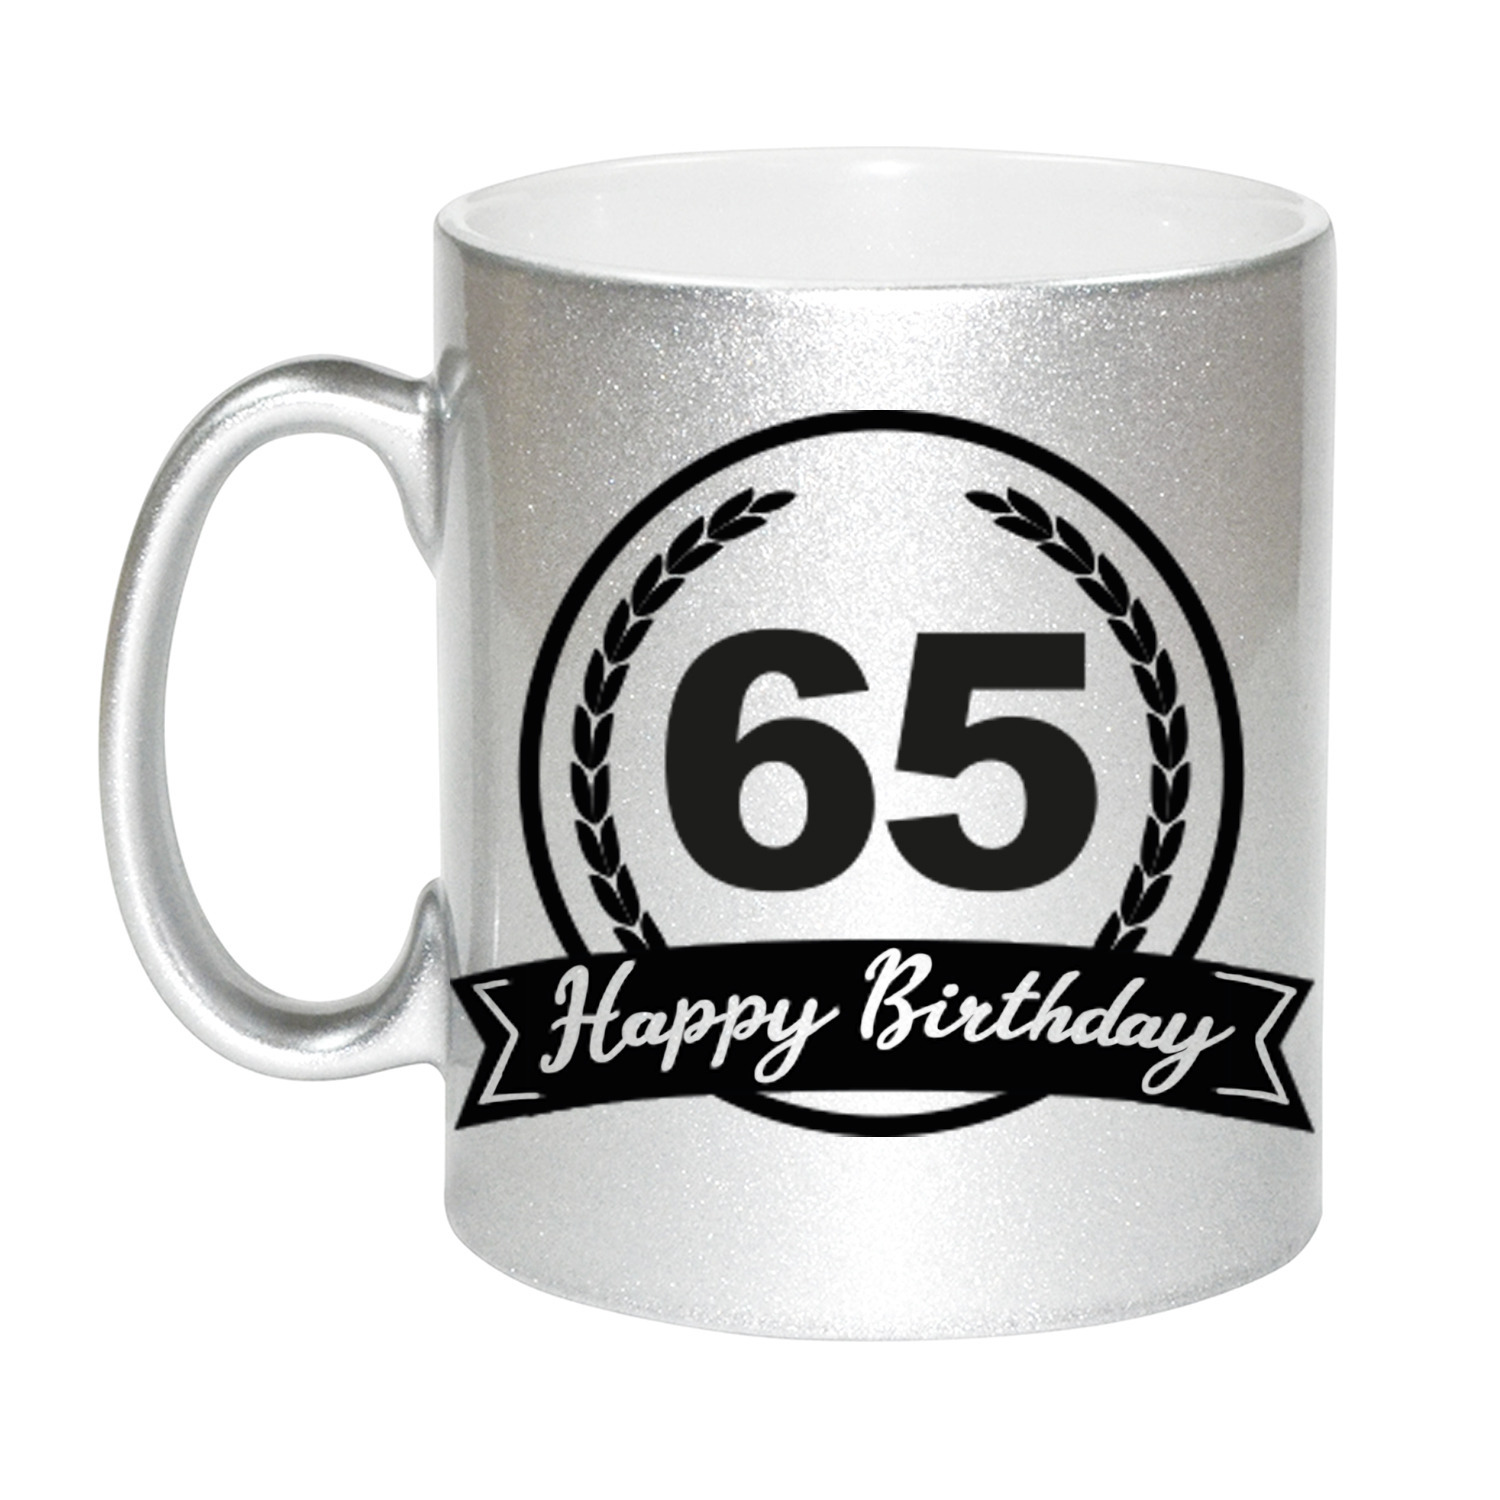 Happy Birthday 65 years zilveren cadeau mok / beker met wimpel 330 ml